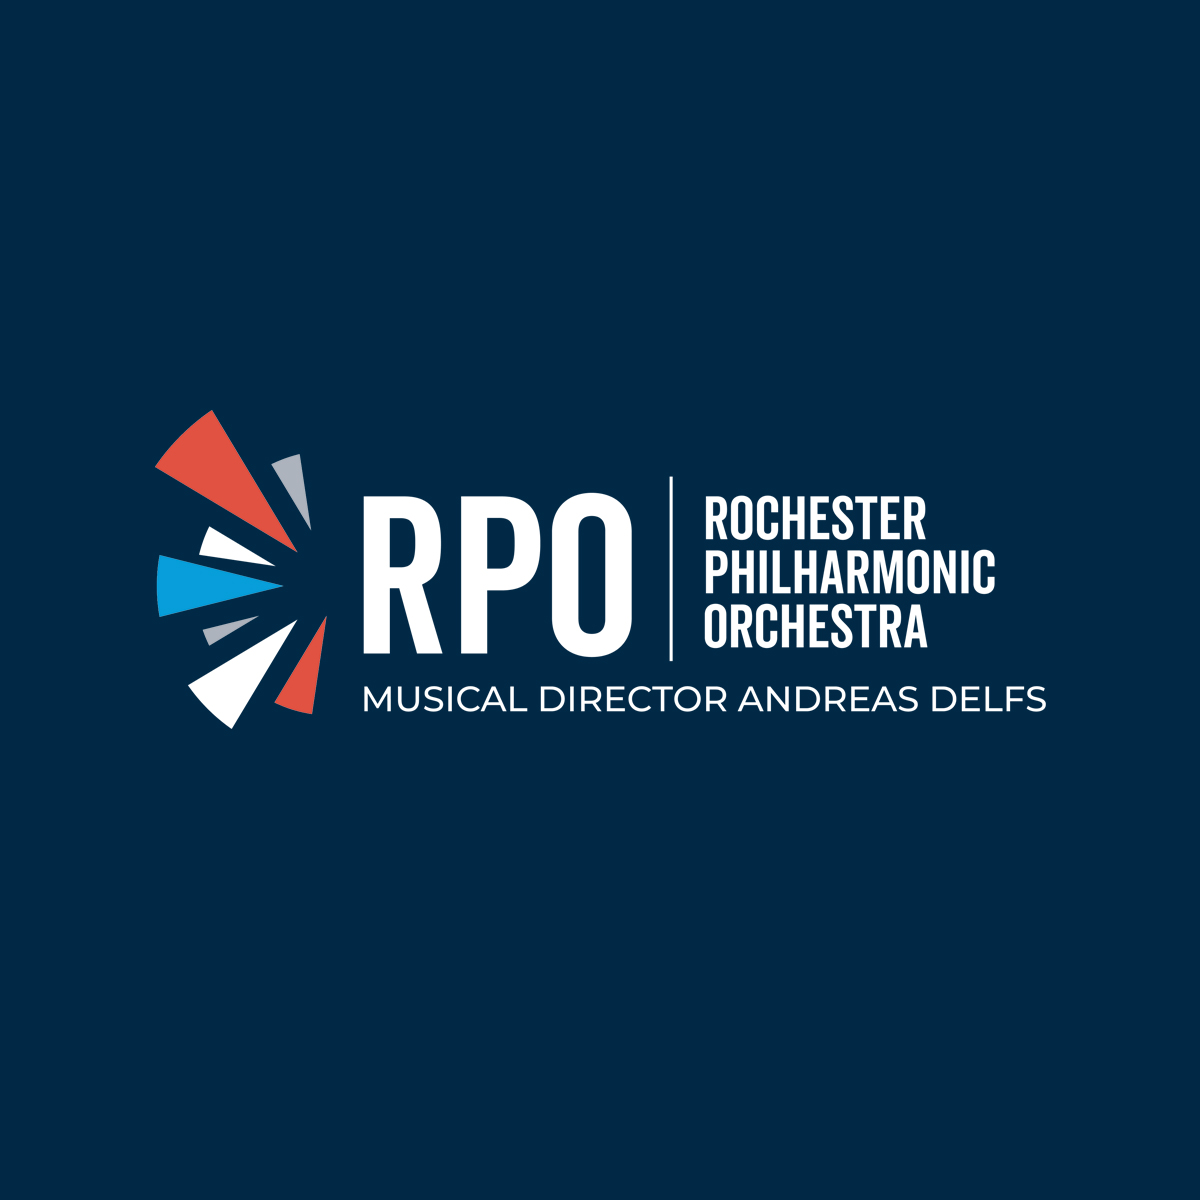 (c) Rpo.org